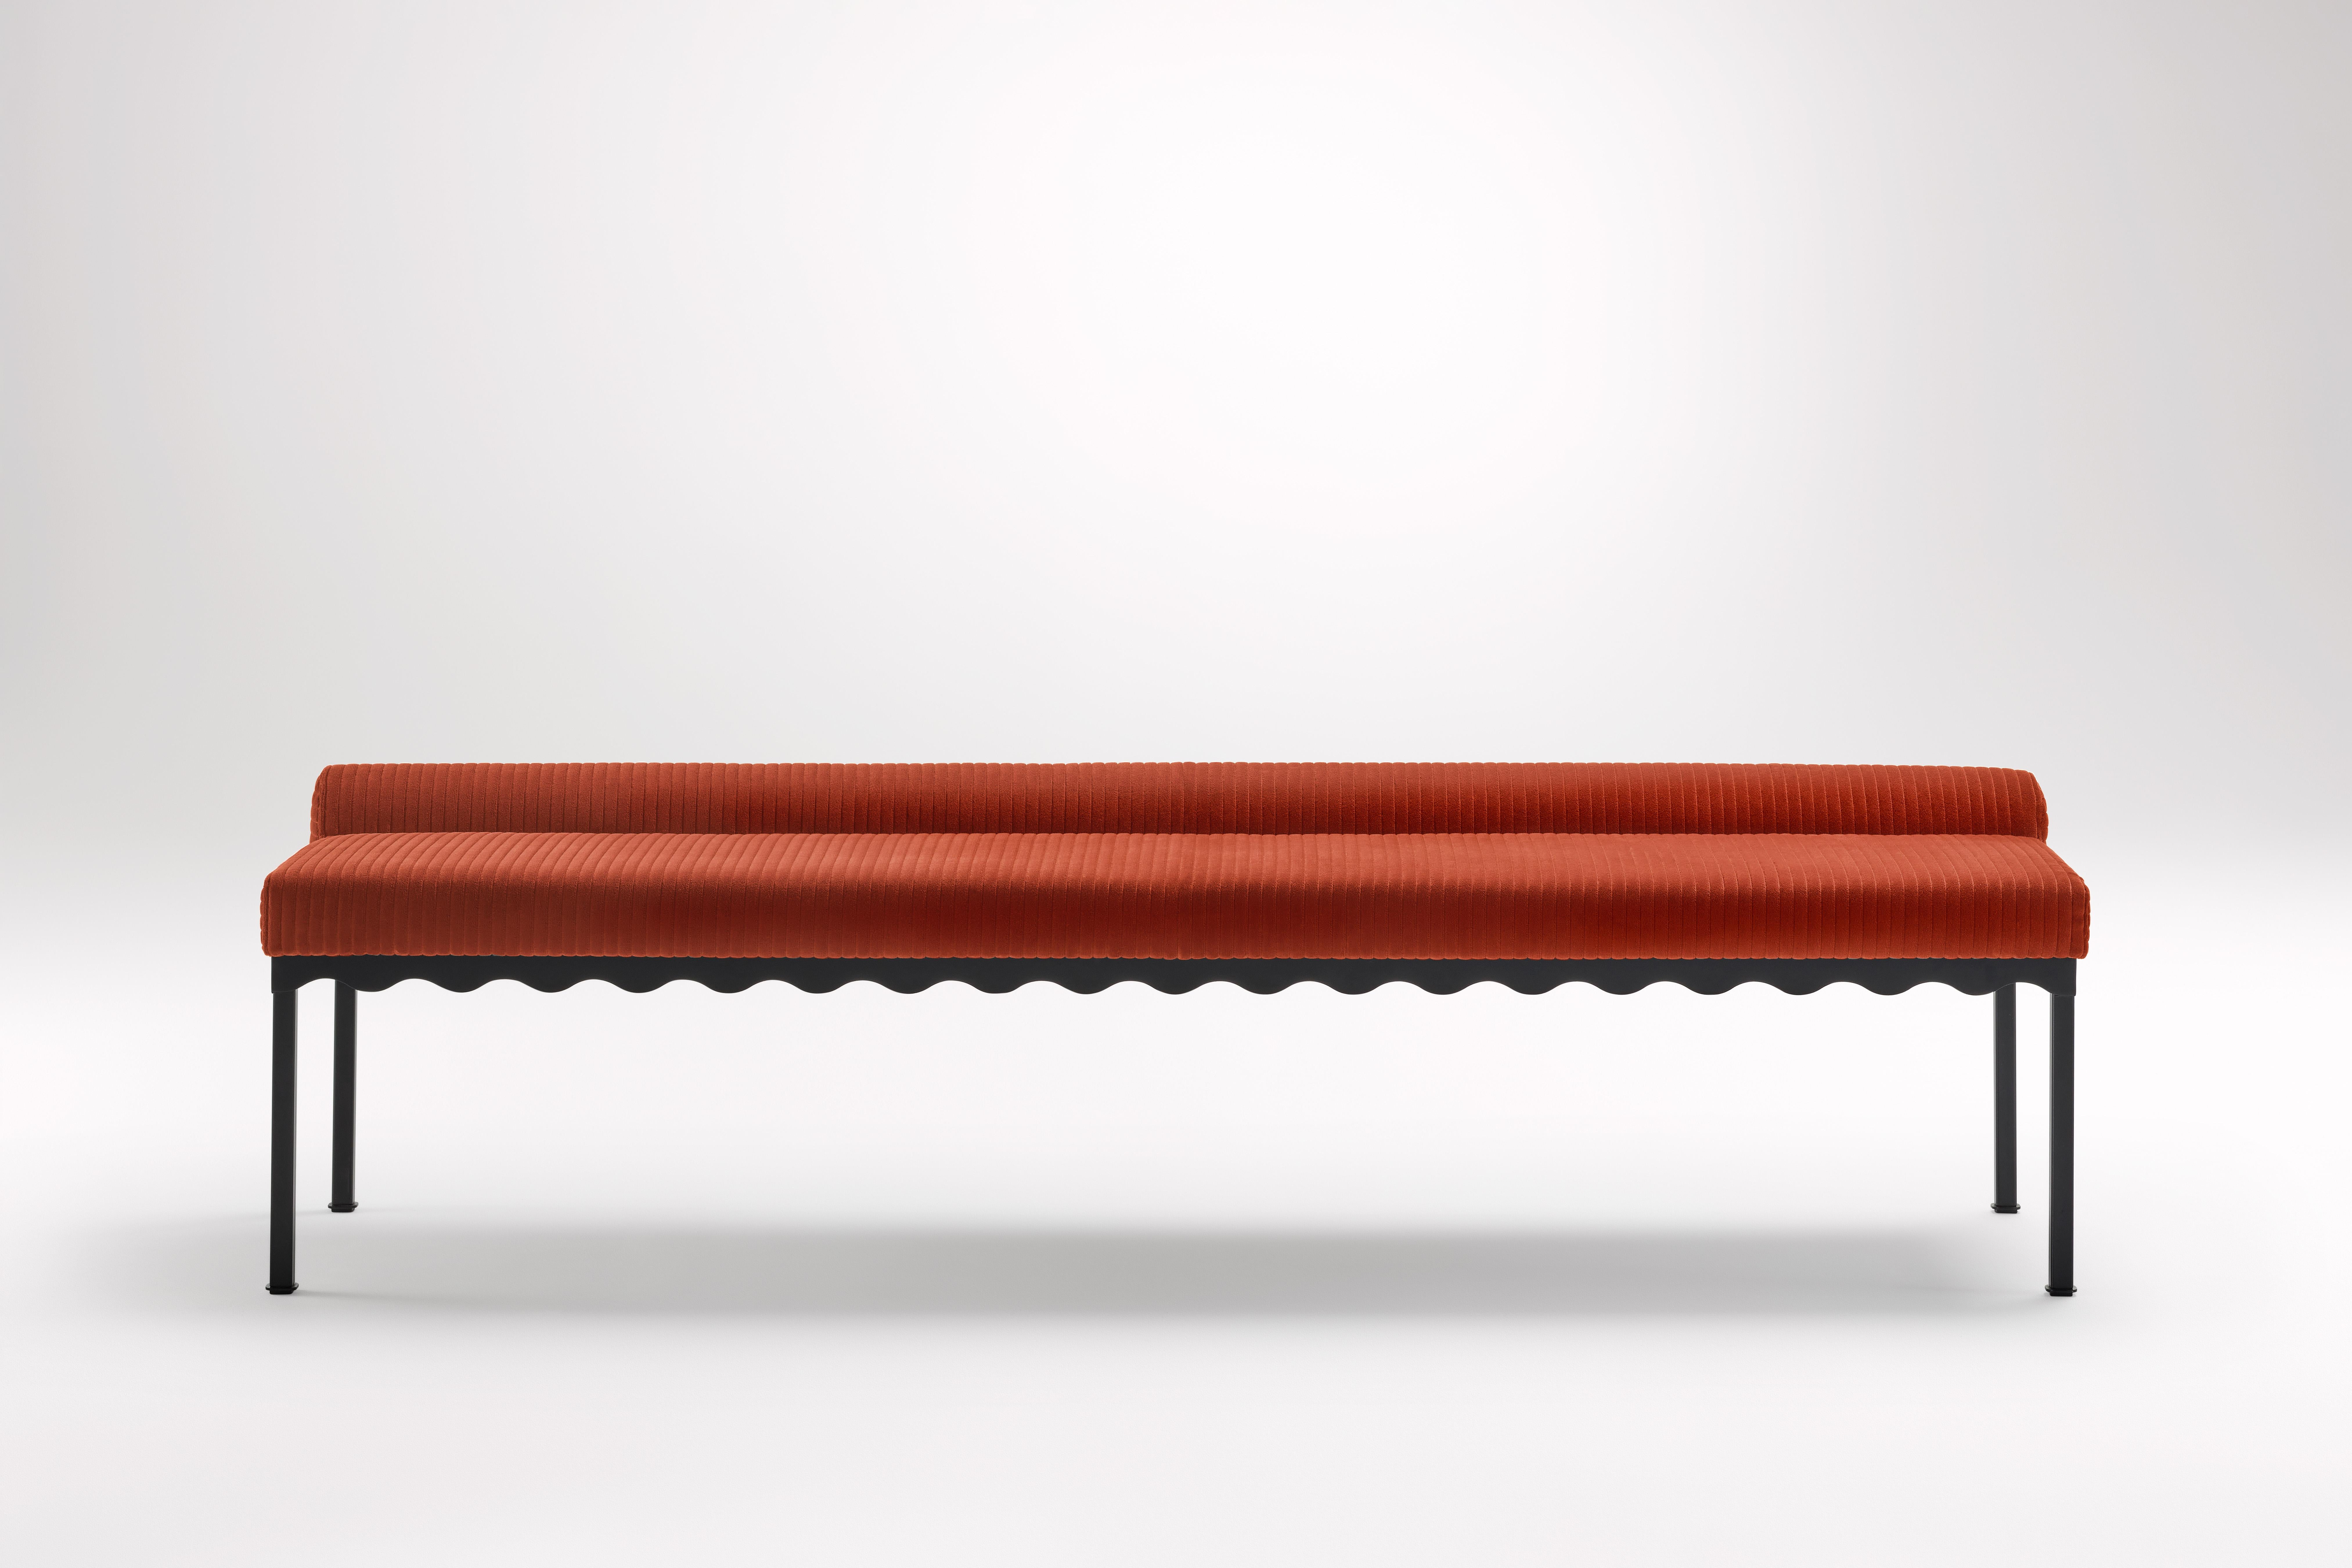 Banc Bellini 2040 Sanguine de Coco Flip
Dimensions : D 204 x L 54 x H 52,5 cm
MATERIAL : Bois / Plateaux rembourrés, Cadre en acier peint par poudrage. 
Poids : 30 kg
Finitions du cadre : Noir Textura.

Coco Flip est un studio de design de meubles